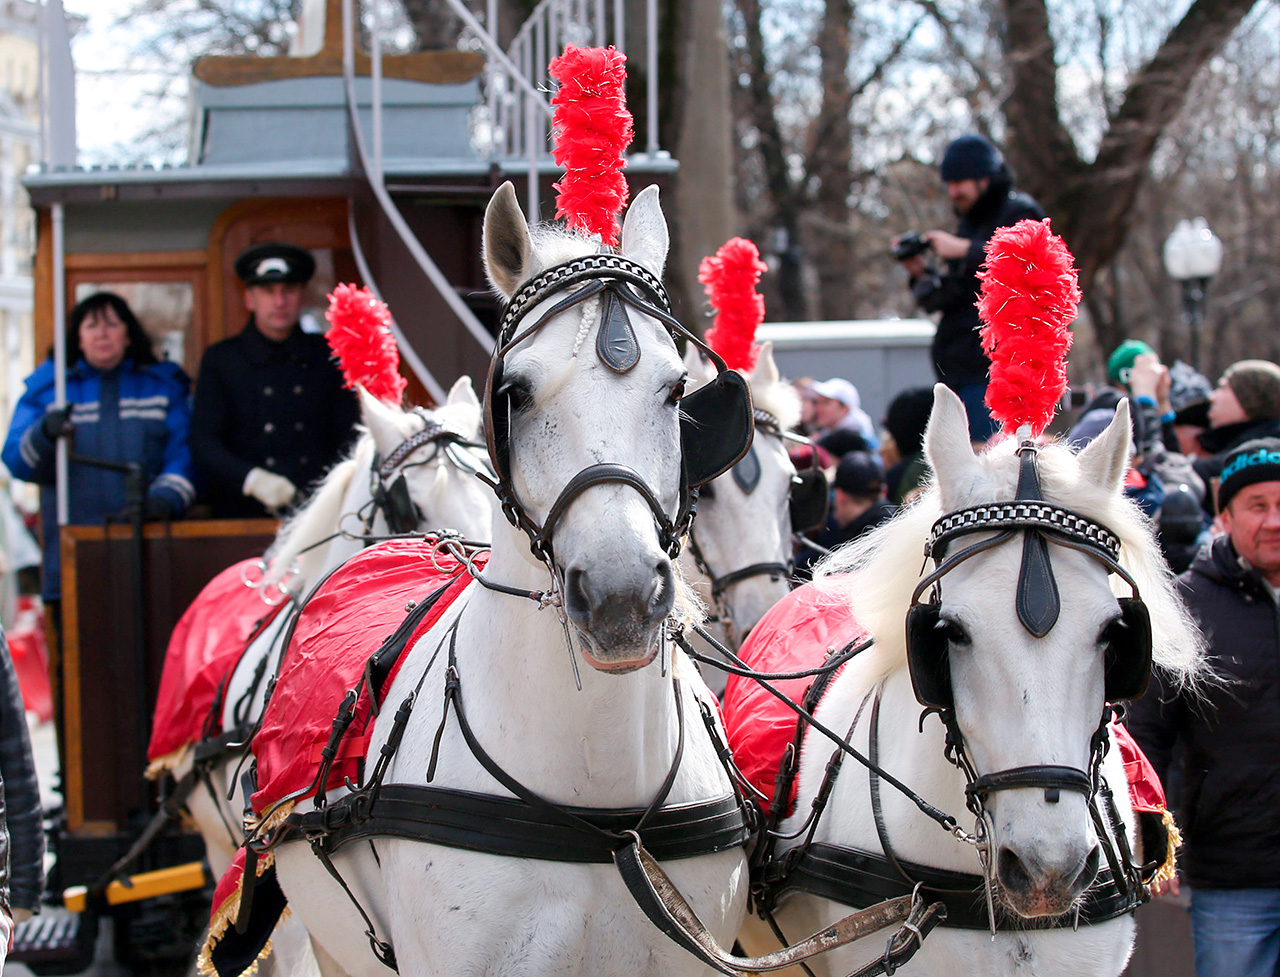 A história do transporte público de Moscou remonta à carruagem puxada por cavalos do século 19.